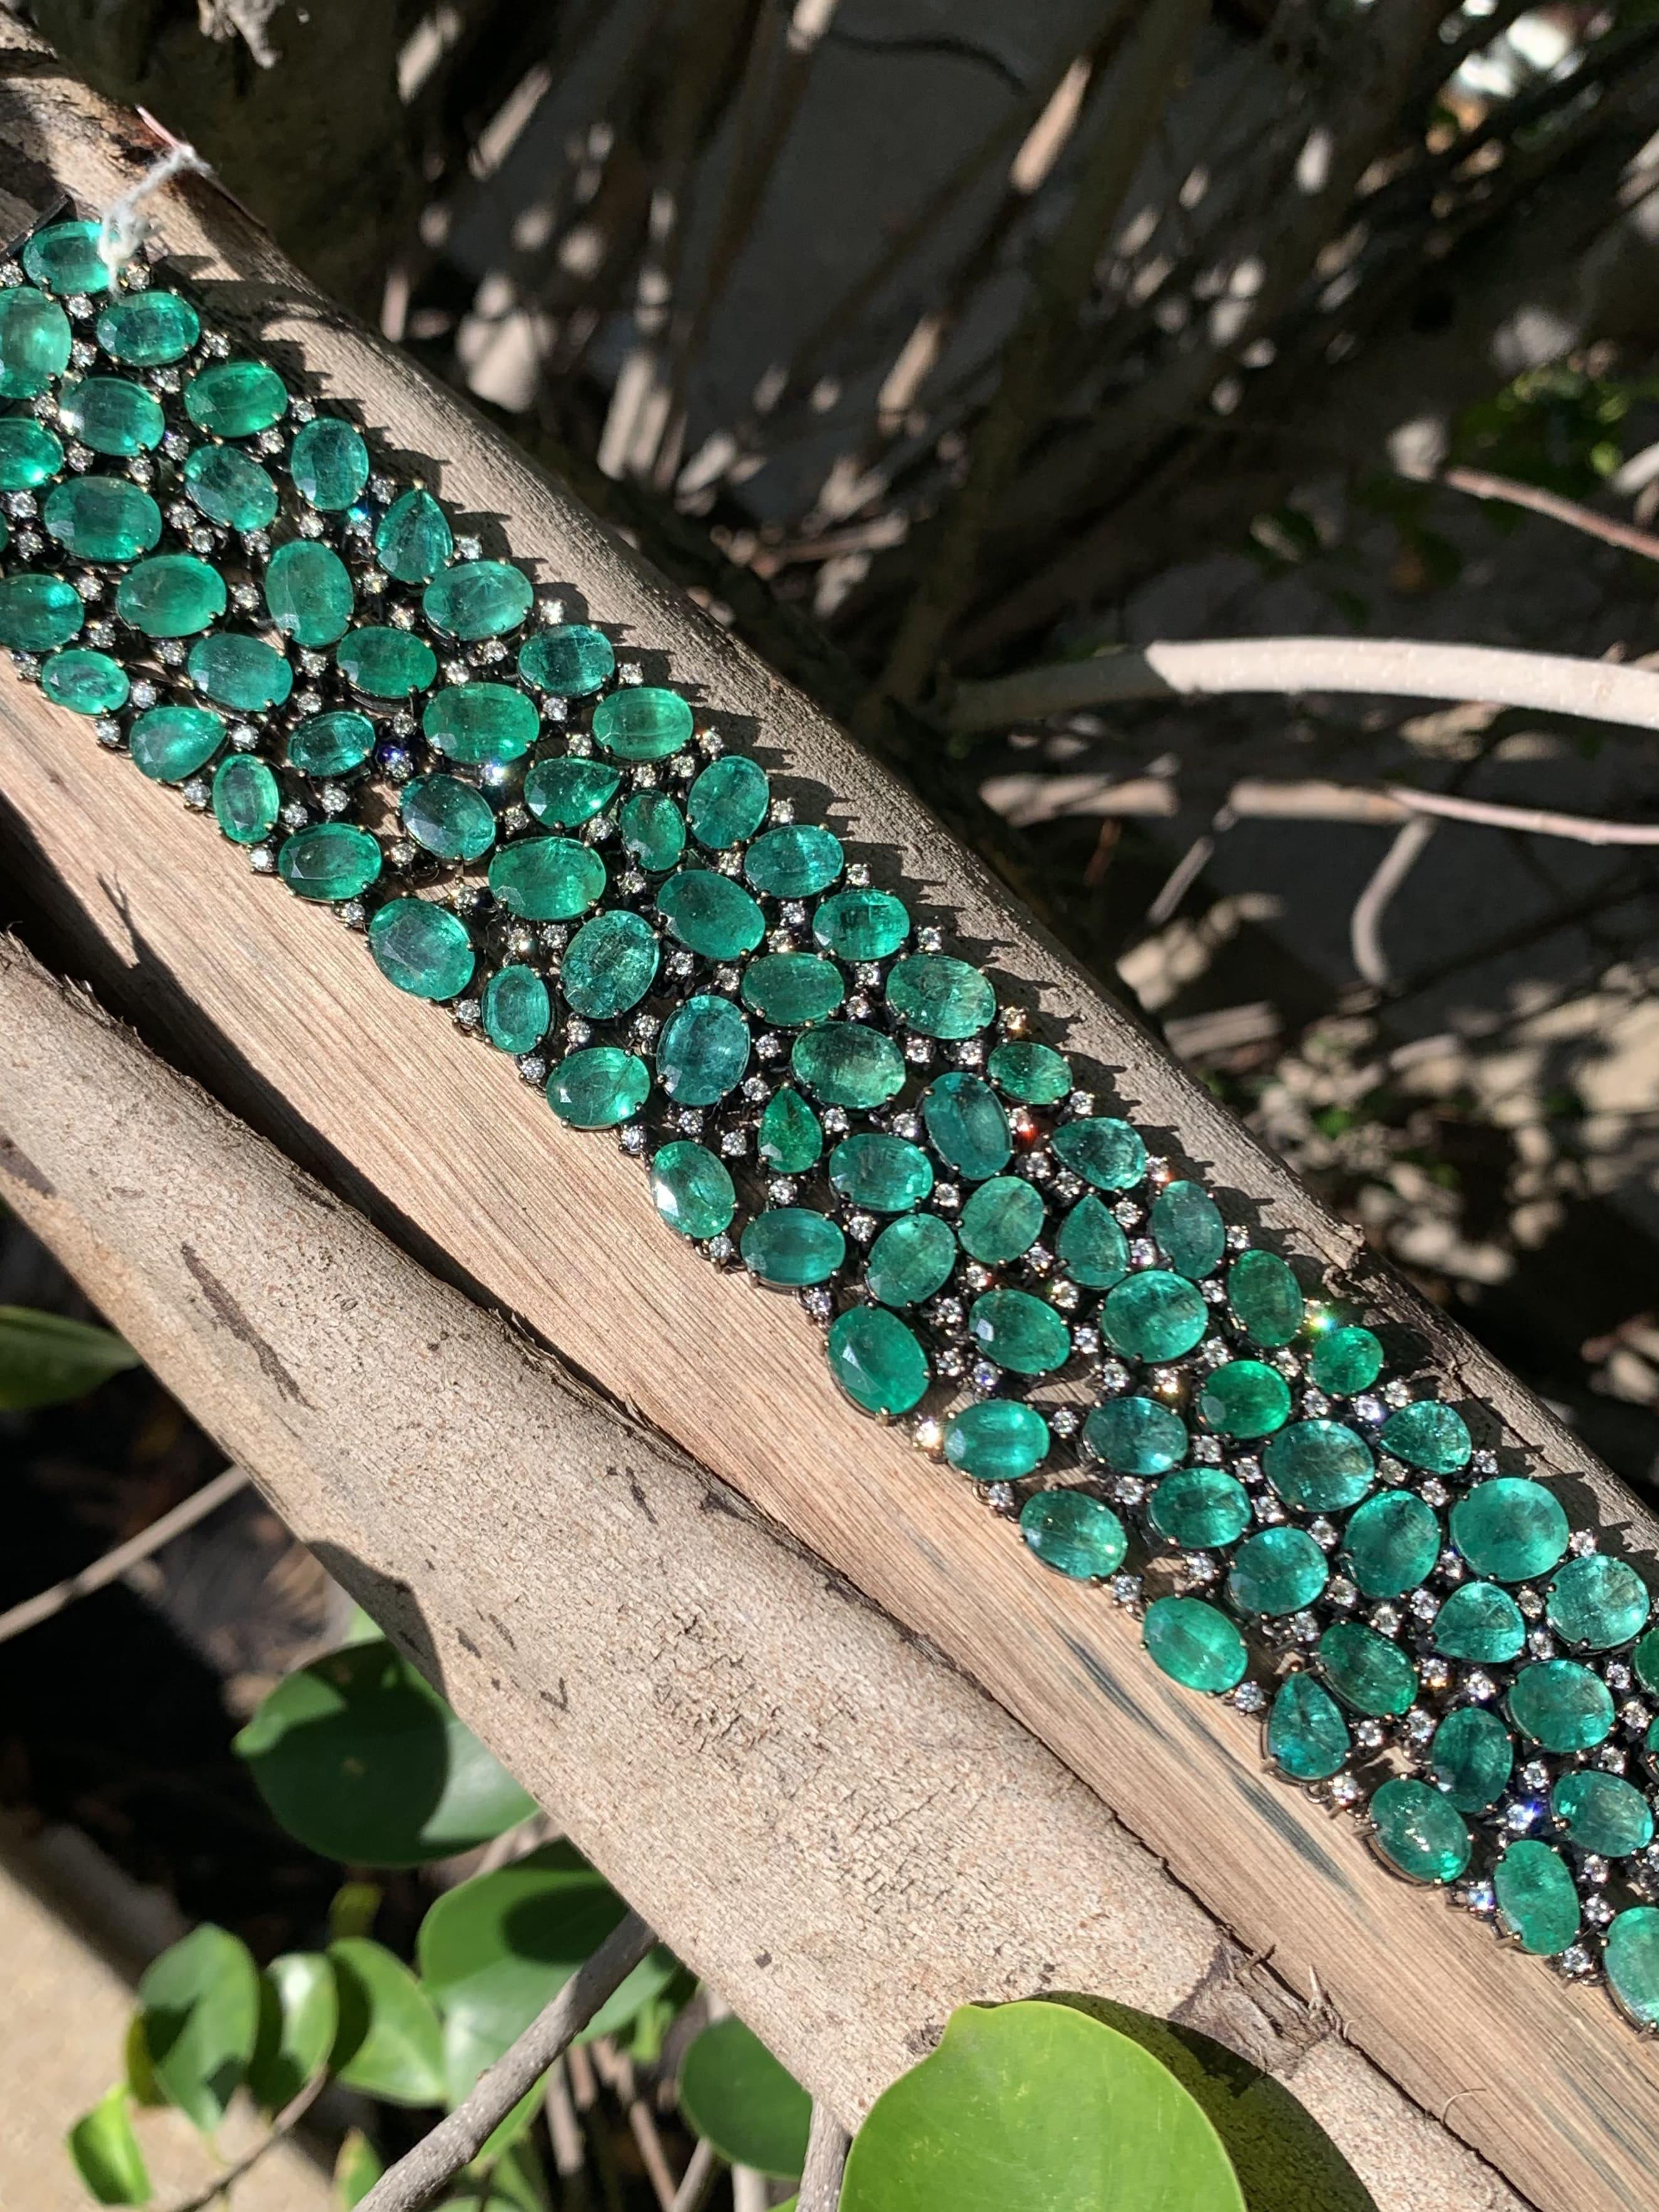 Dieses erstaunliche und elegante Armband ist mit exquisiten Smaragden verziert und wird in sorgfältiger Handarbeit hergestellt, um die Herzen anspruchsvoller Schmuckliebhaber zu erobern.

Dieses bemerkenswerte Armband ist eine unvergleichliche